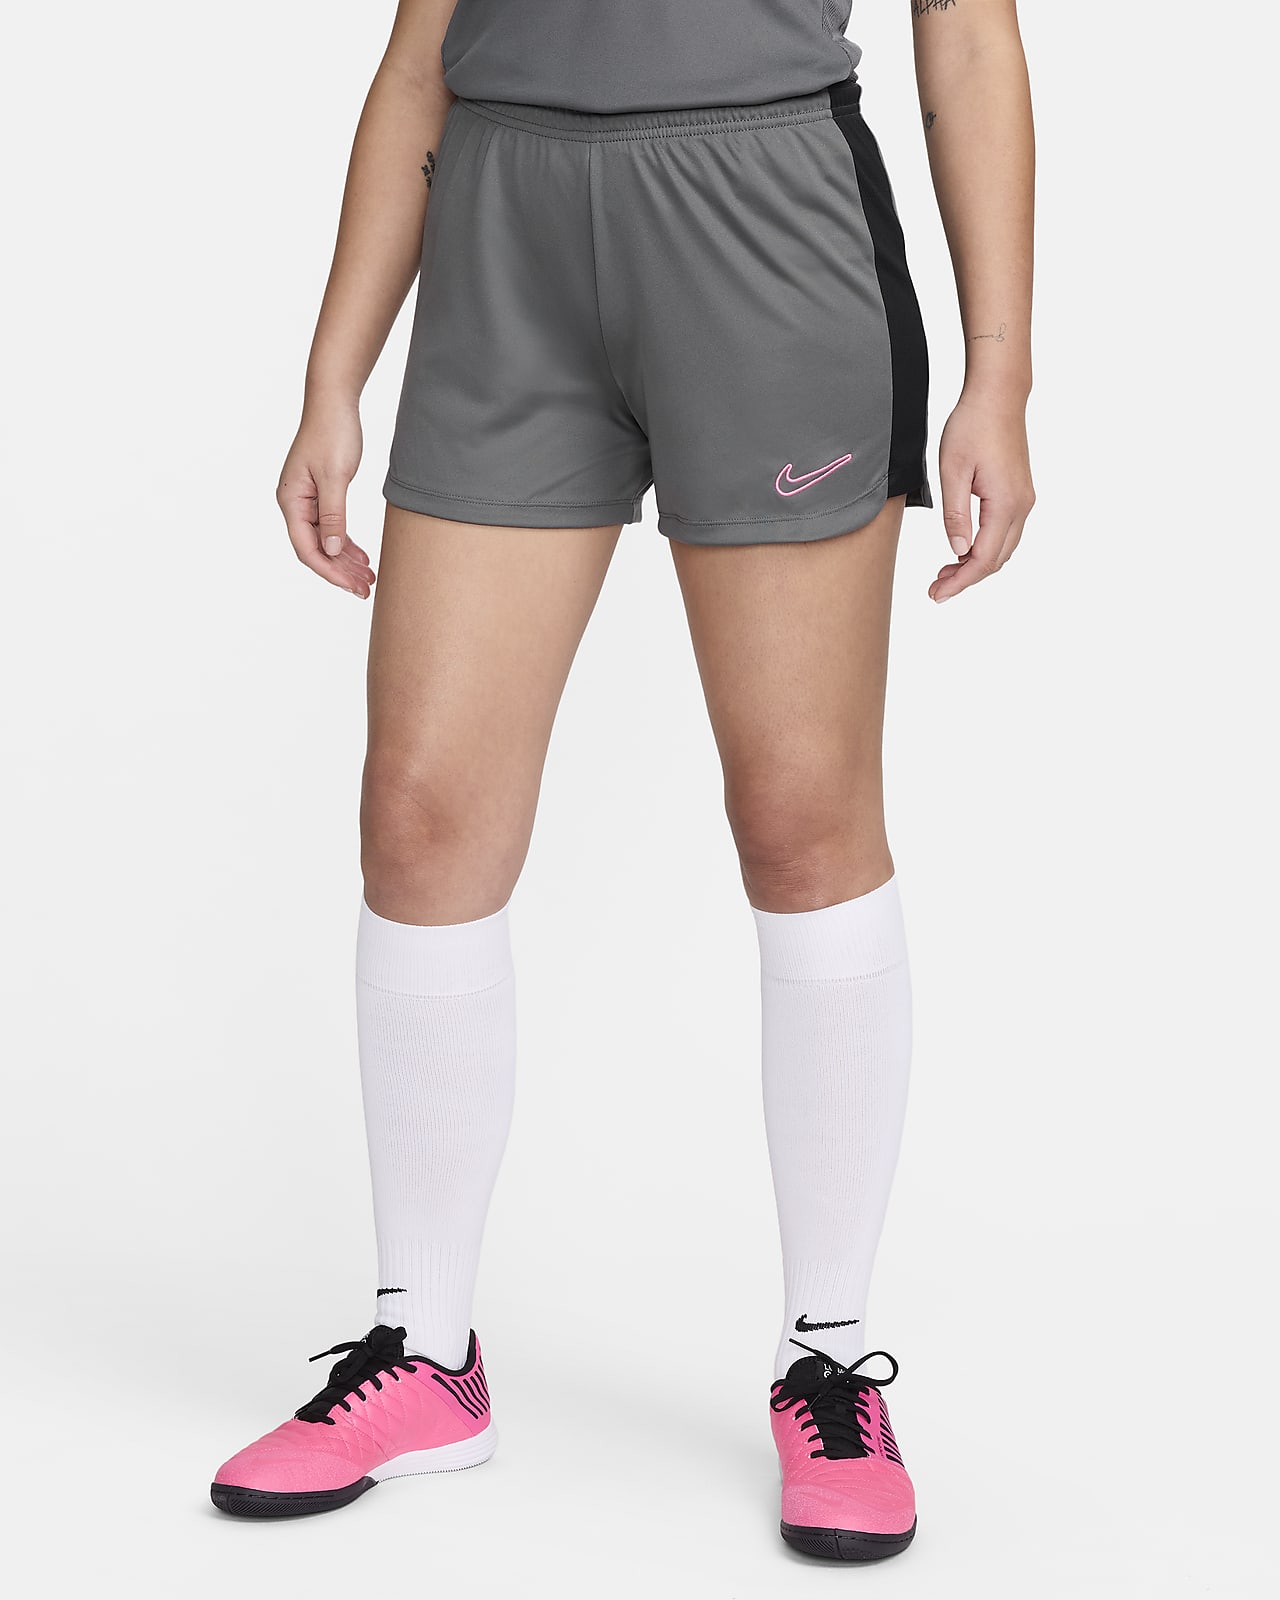 Shorts Feminino Academia Nike Dry 10k 895863-010 Preto - pittol